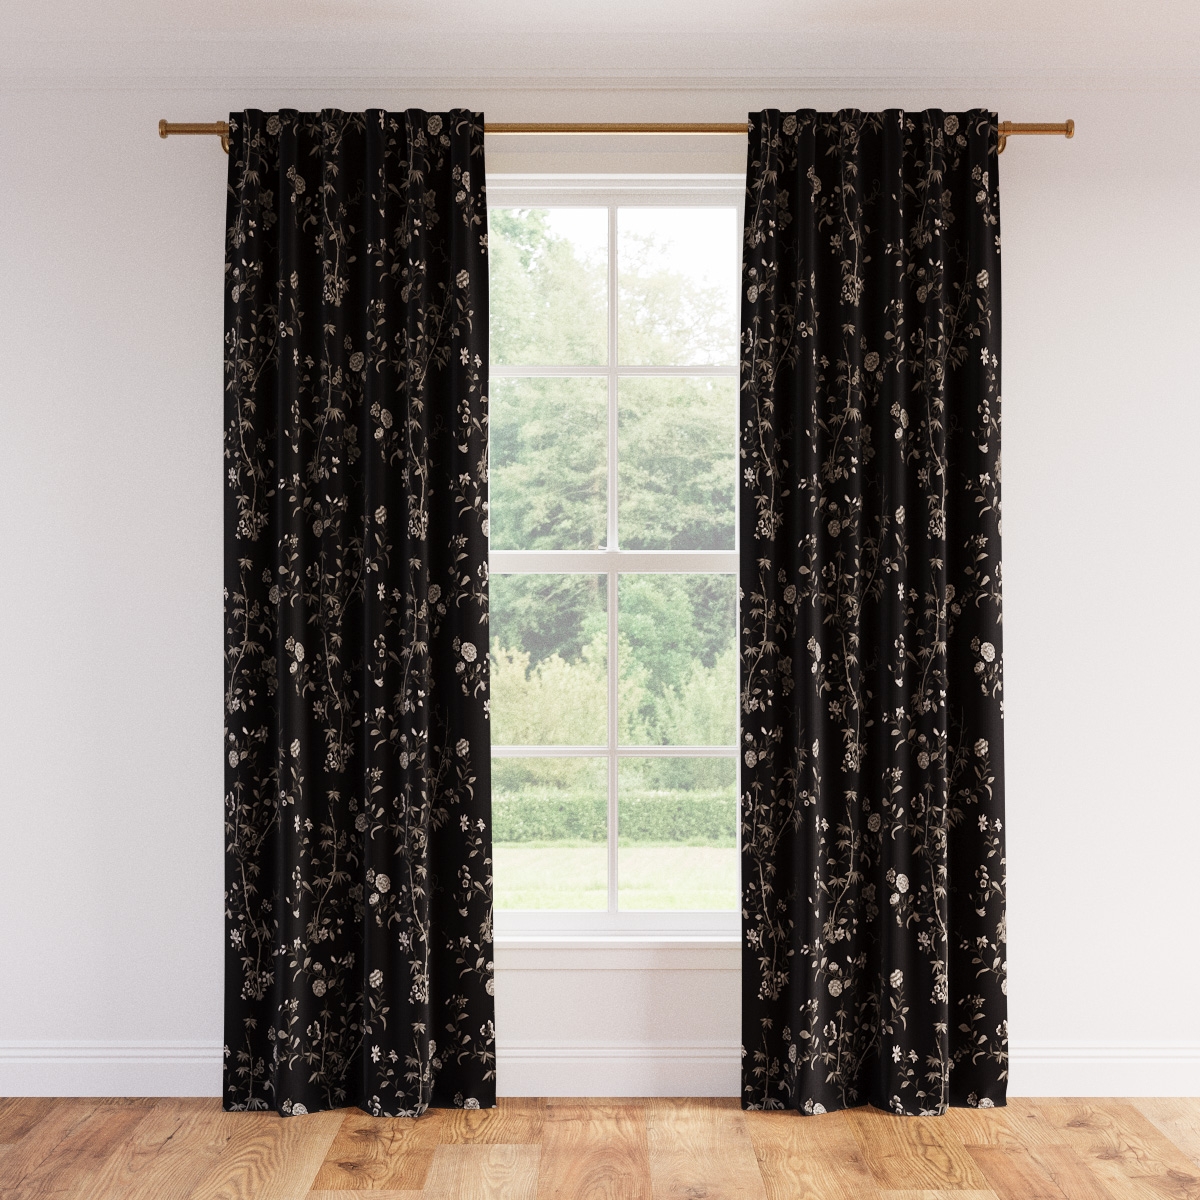 Printed Linen Curtain, Black Bamboo Garden, 50" x 96" - Image 0